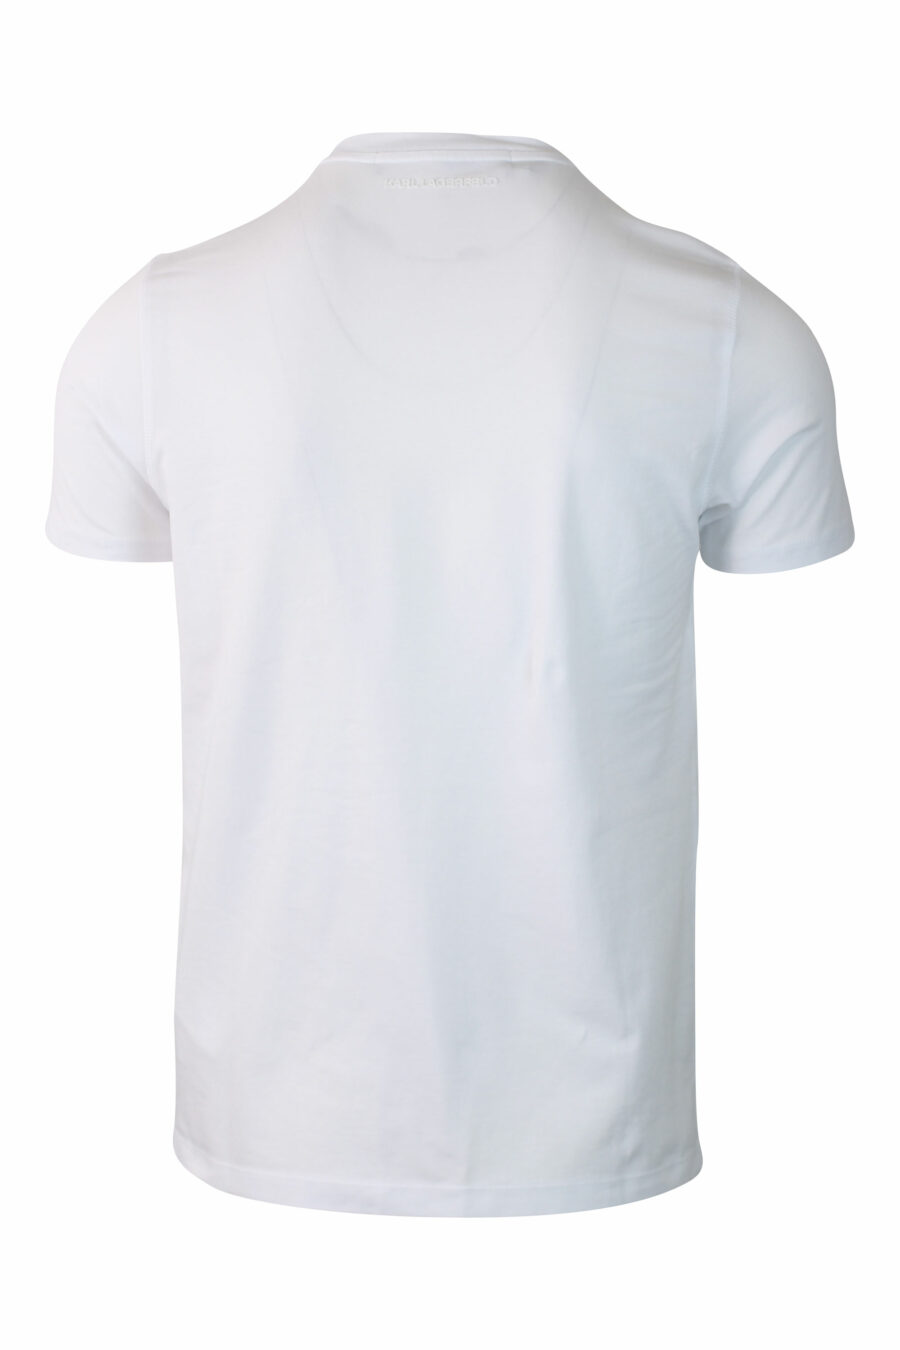 Camiseta blanca con maxilogo "karl" silueta - IMG 0122